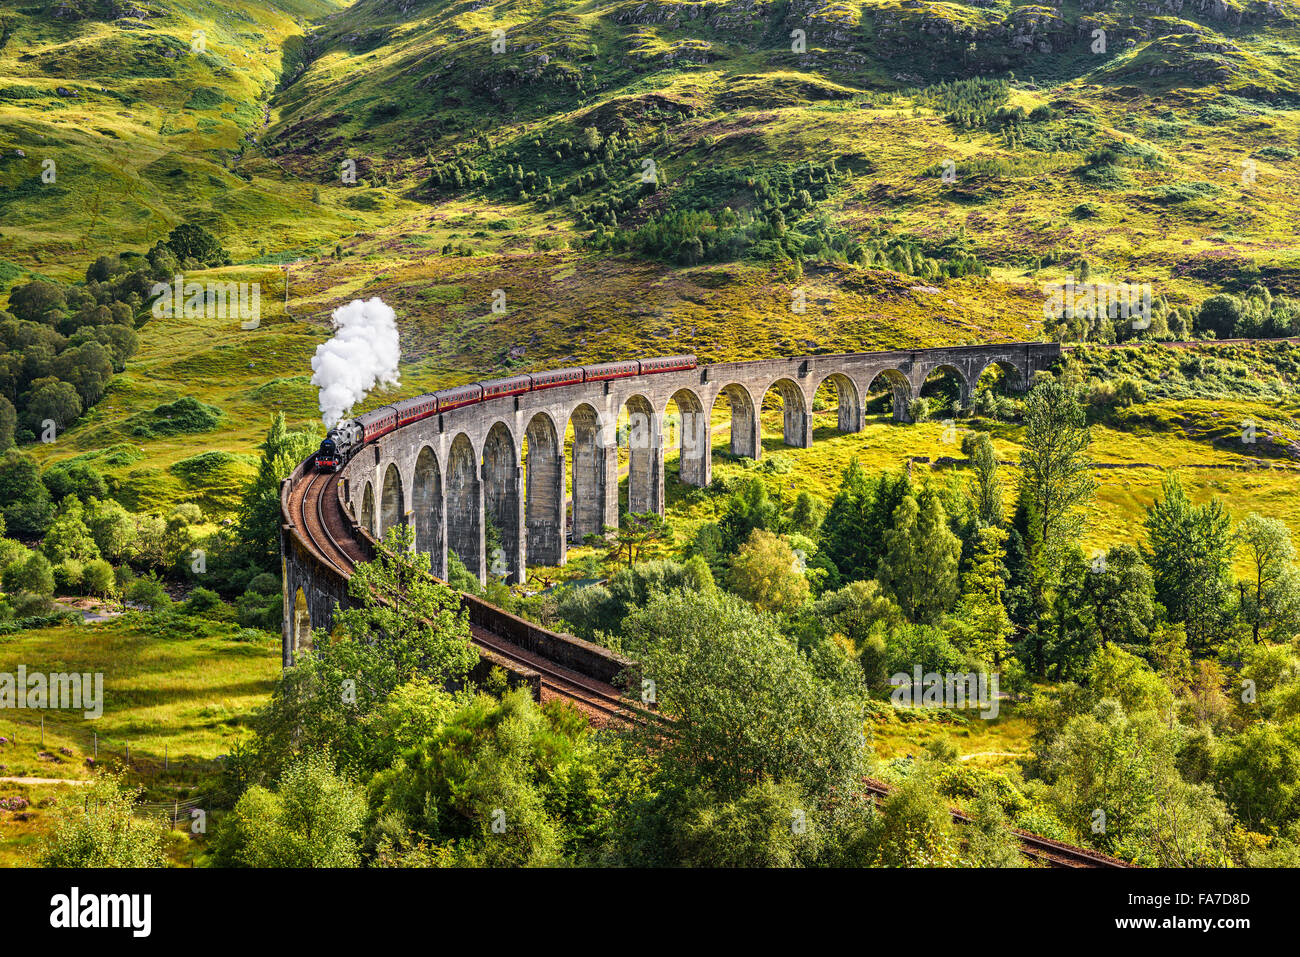 Glenfinnan Viaducto Ferroviario en Escocia con el tren de vapor jacobita pasando por Foto de stock